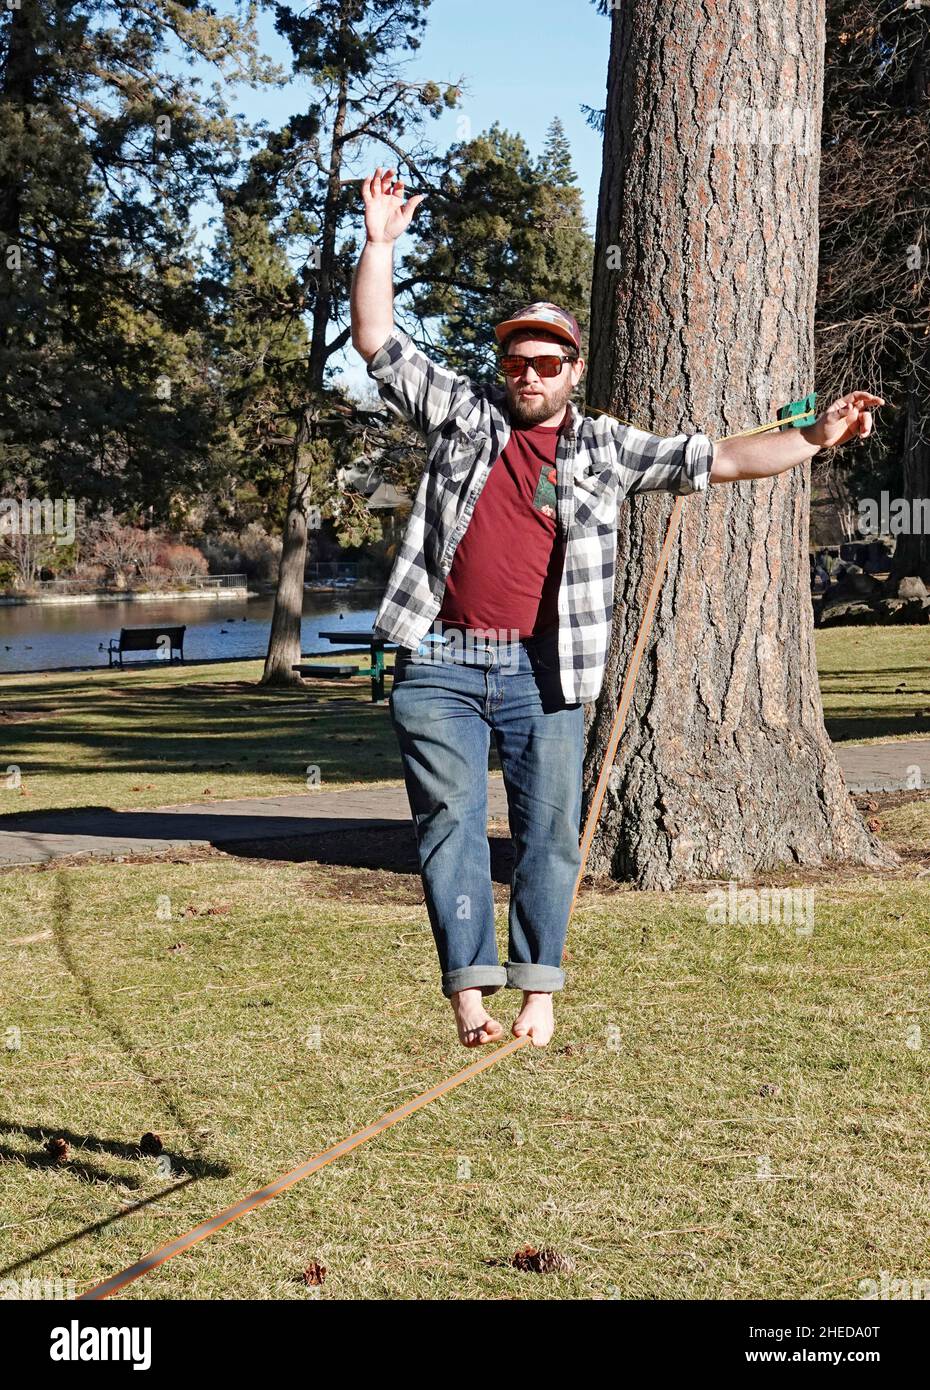 Un étudiant d'université pratique une activité connue sous le nom de doublure de mou, marchant une étroite sangle en nylon.Dans un parc de la ville de Bend, Oregon. Banque D'Images